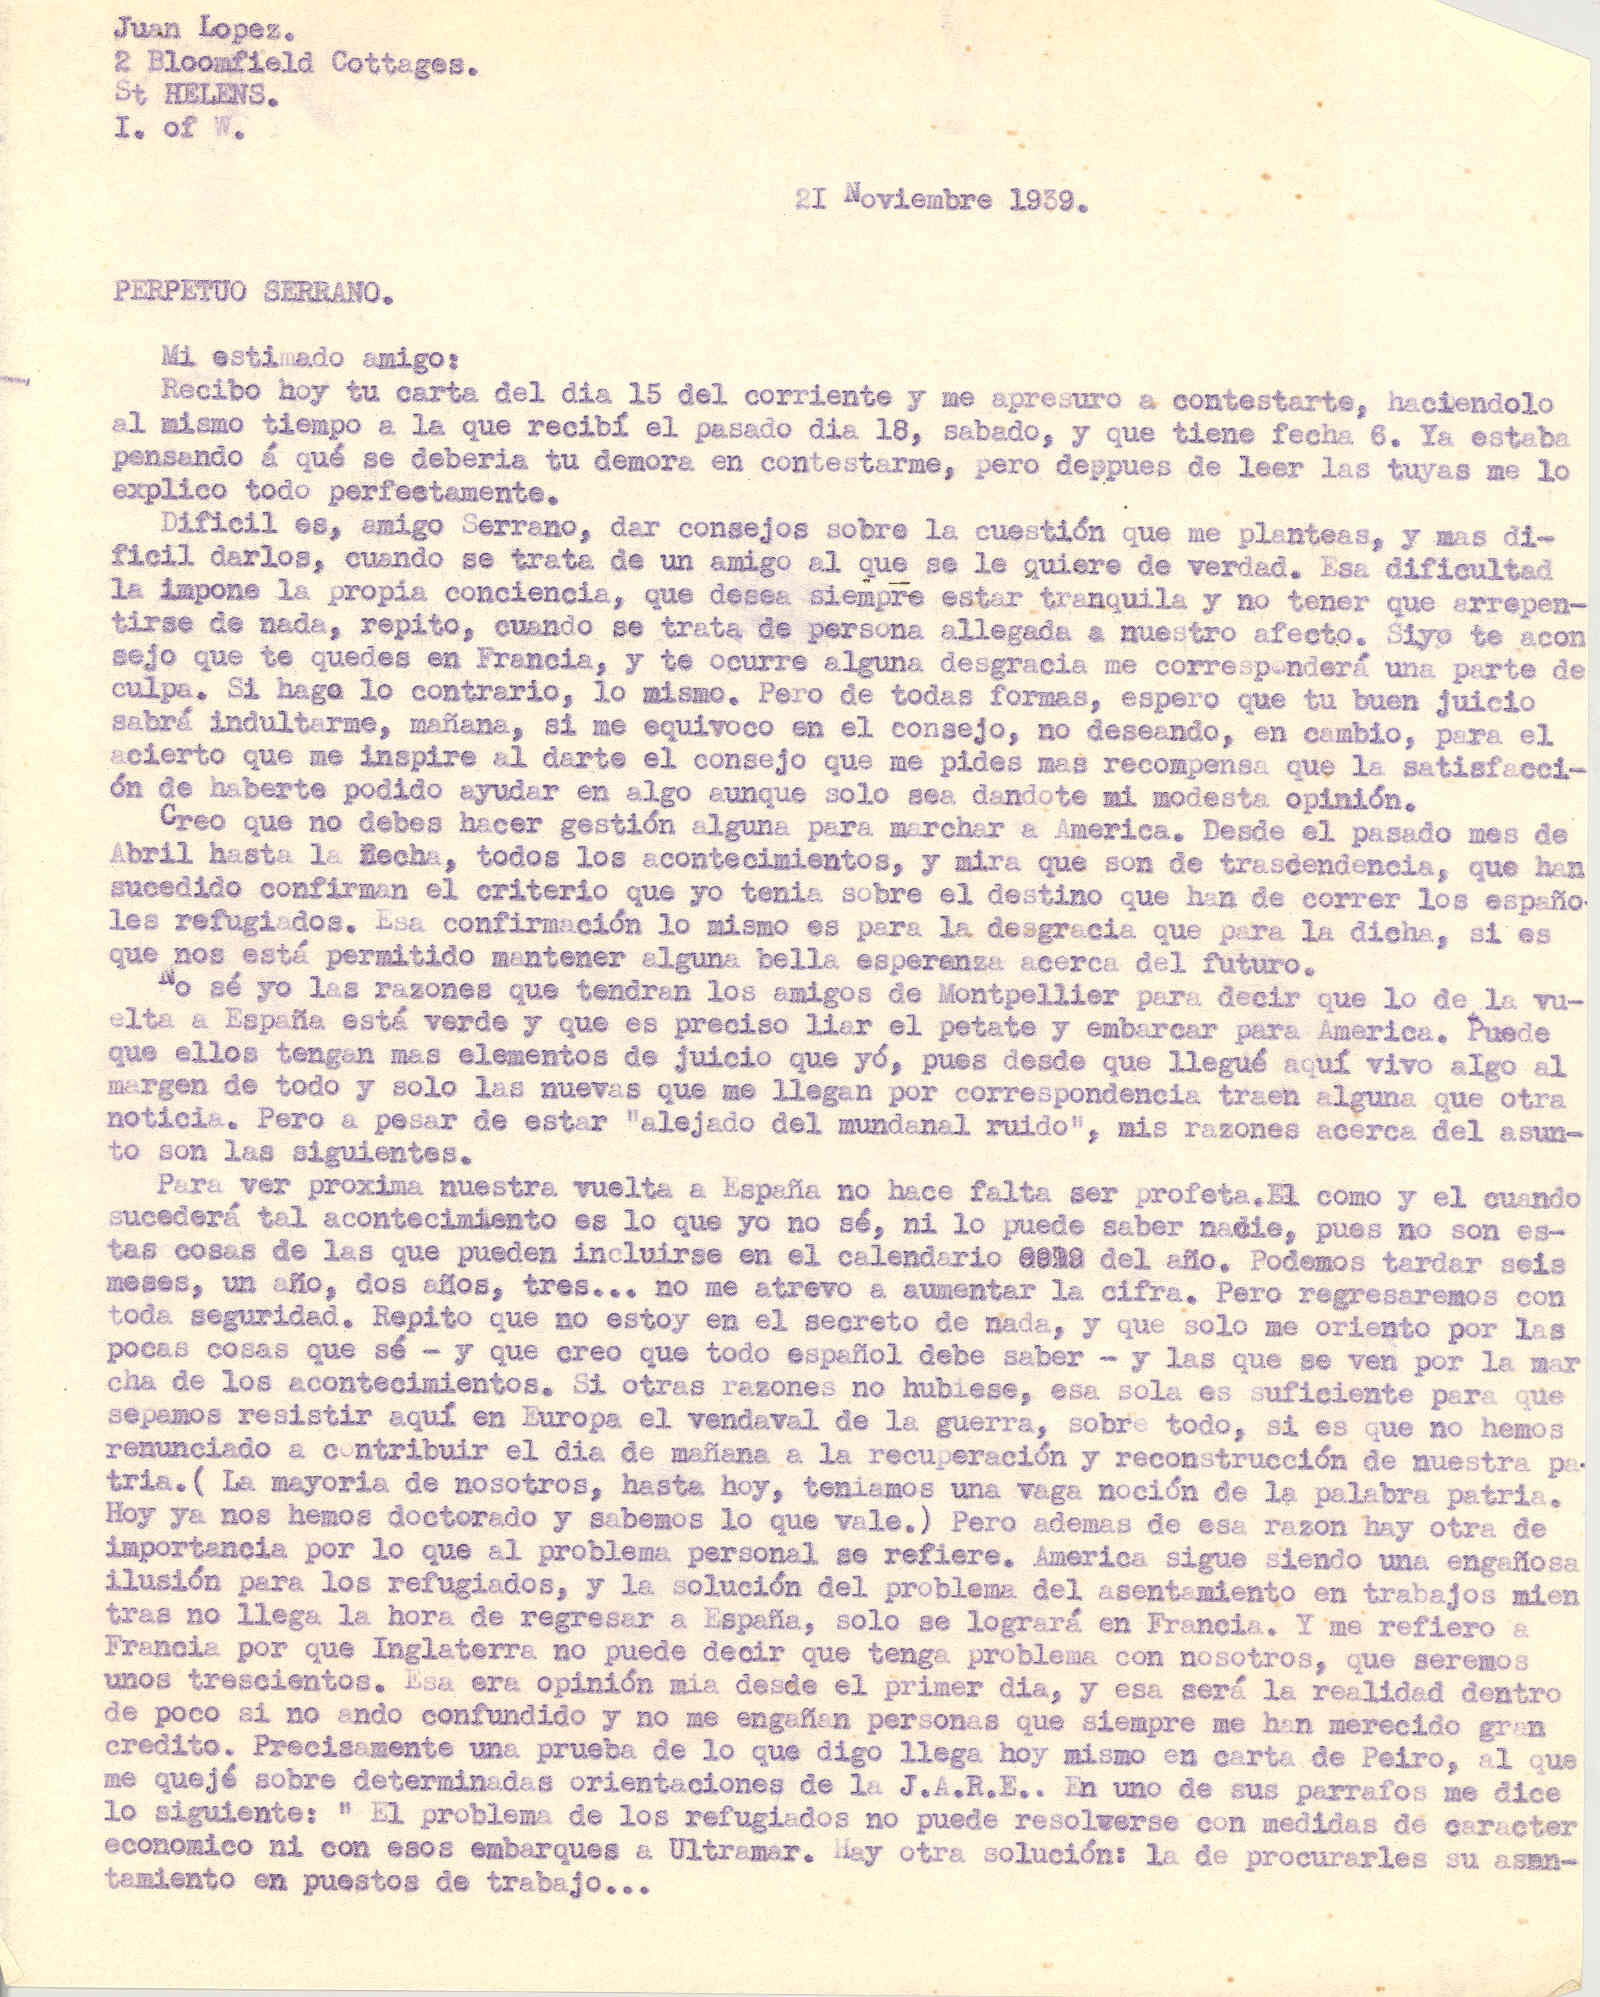 Carta a Perpetuo Serrano respondiendo con la opinión de no emigrar a América y las esperanzas de volver a España.